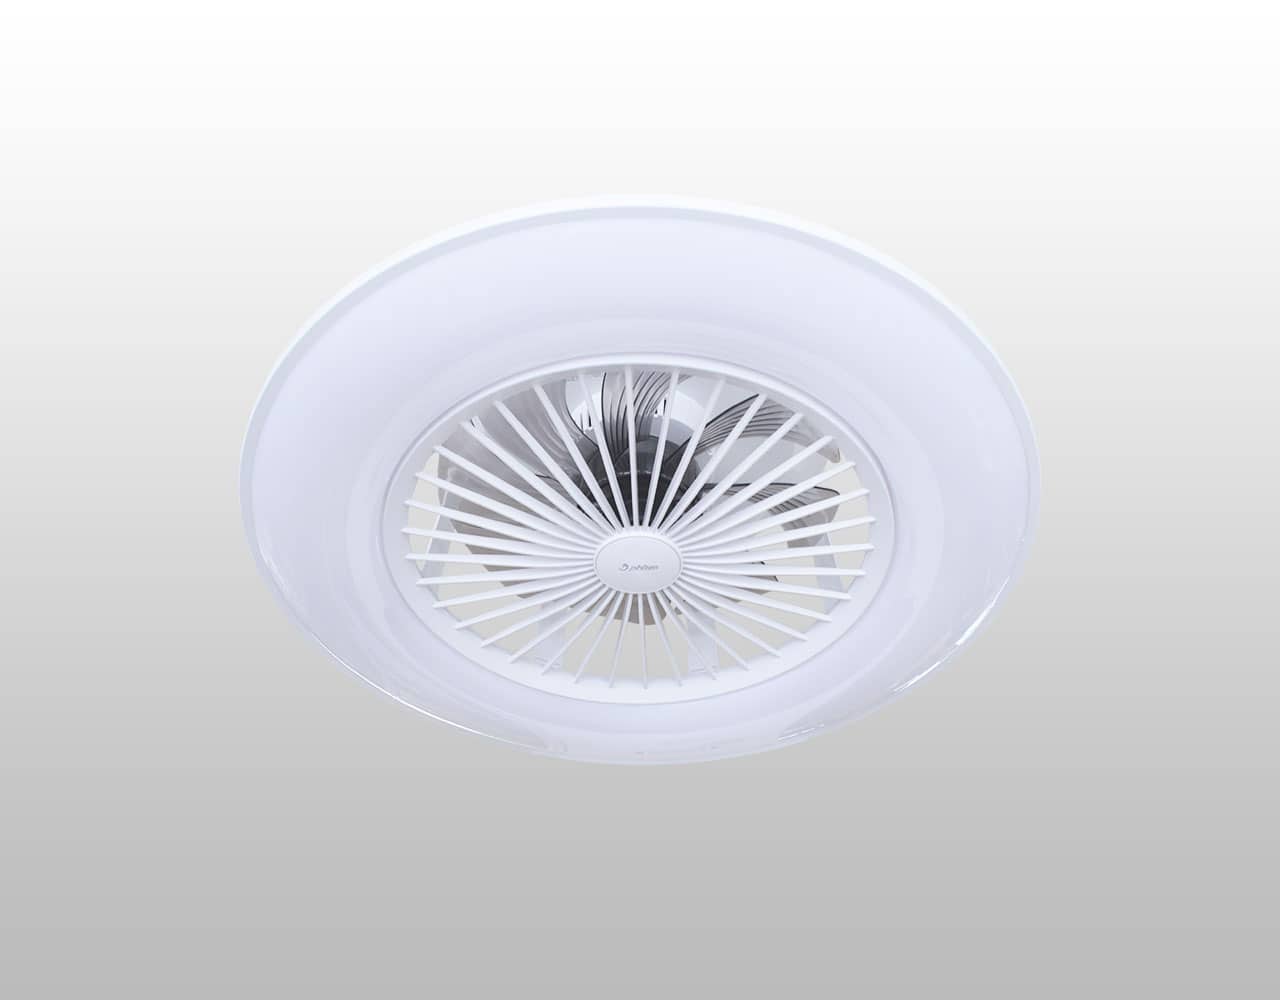 0422BE784000,健光浴シーリングファンライト LED 調光・調光(電球色-昼白色) 1灯 薄型 小型 軽量 Phiten(ファイテン)製シーリングファンライト